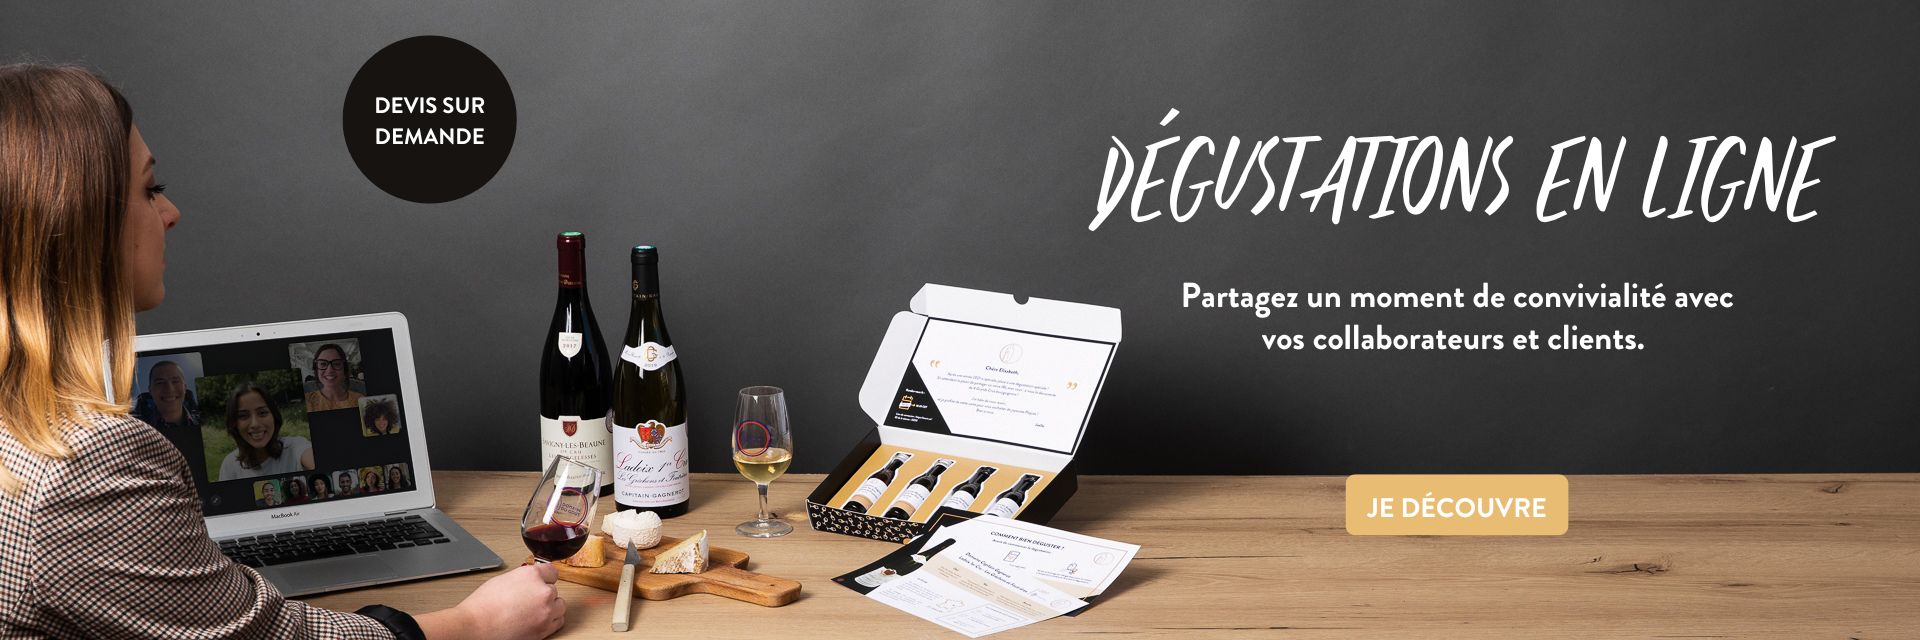 coffret de dégustation de vin en ligne avec un plateau de fromages et des verres de vins